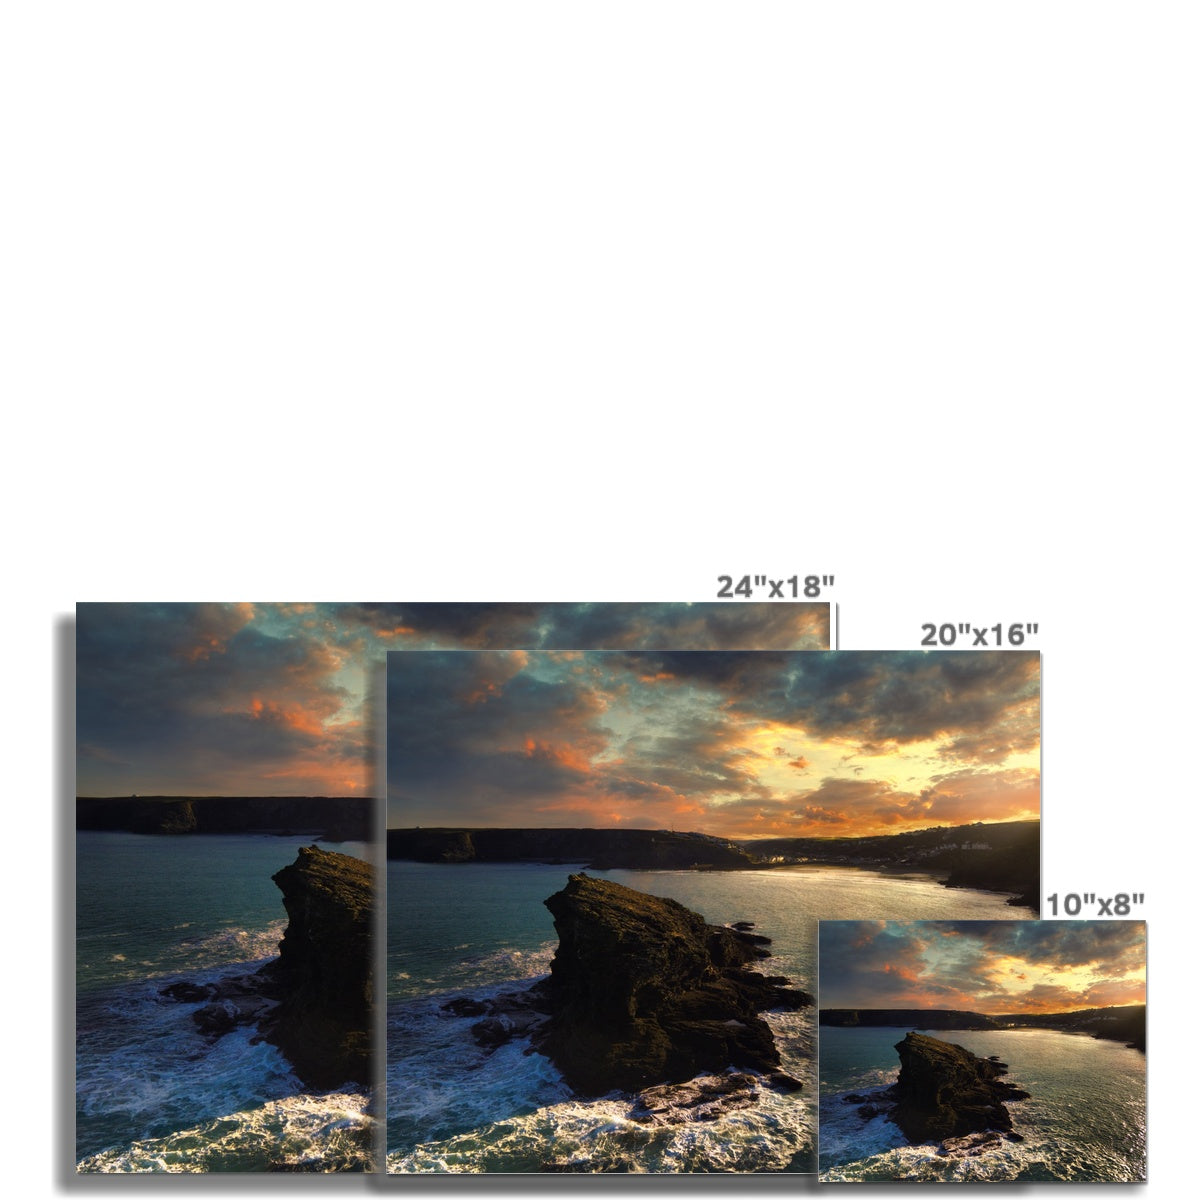 gull rock portreath picture sizes